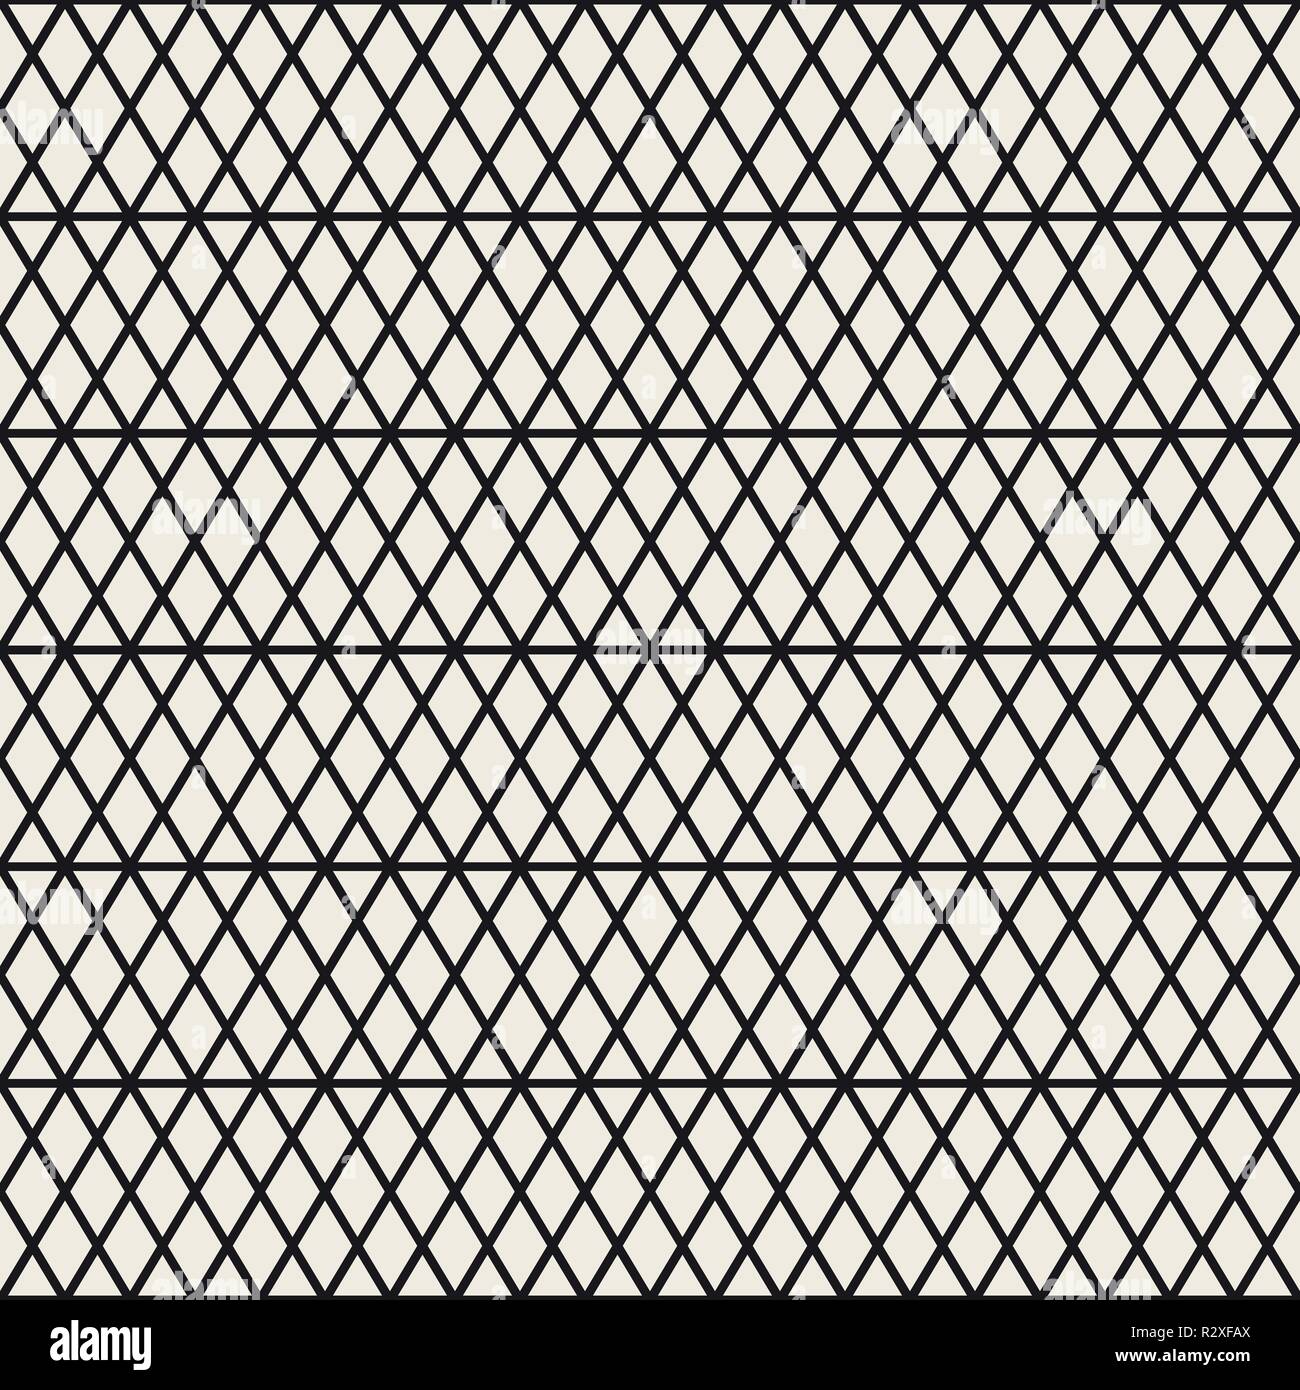 Vektor nahtlose Streifen Muster. Moderne, elegante Textur mit Schwarzweiß-Gitter. Wiederkehrende geometrische rhombus Grid. Einfache lattice Design. Stock Vektor